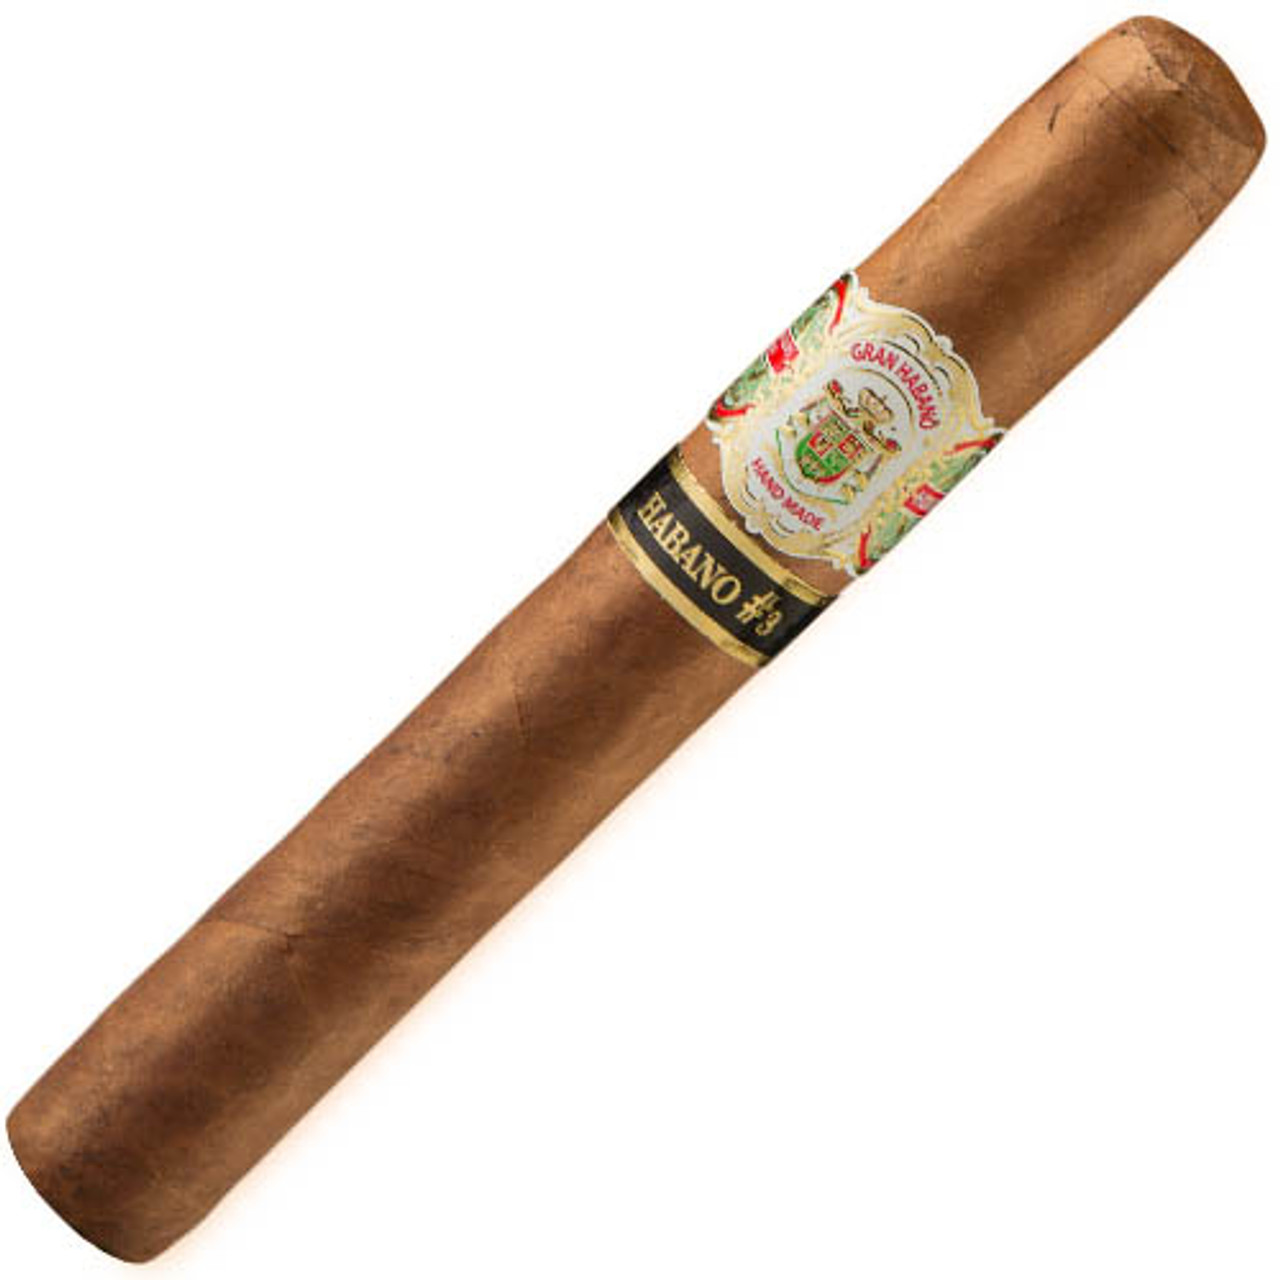 Gran Habano #3 Habano Gran Robusto Cigars - 6 x 54 (Box of 20)